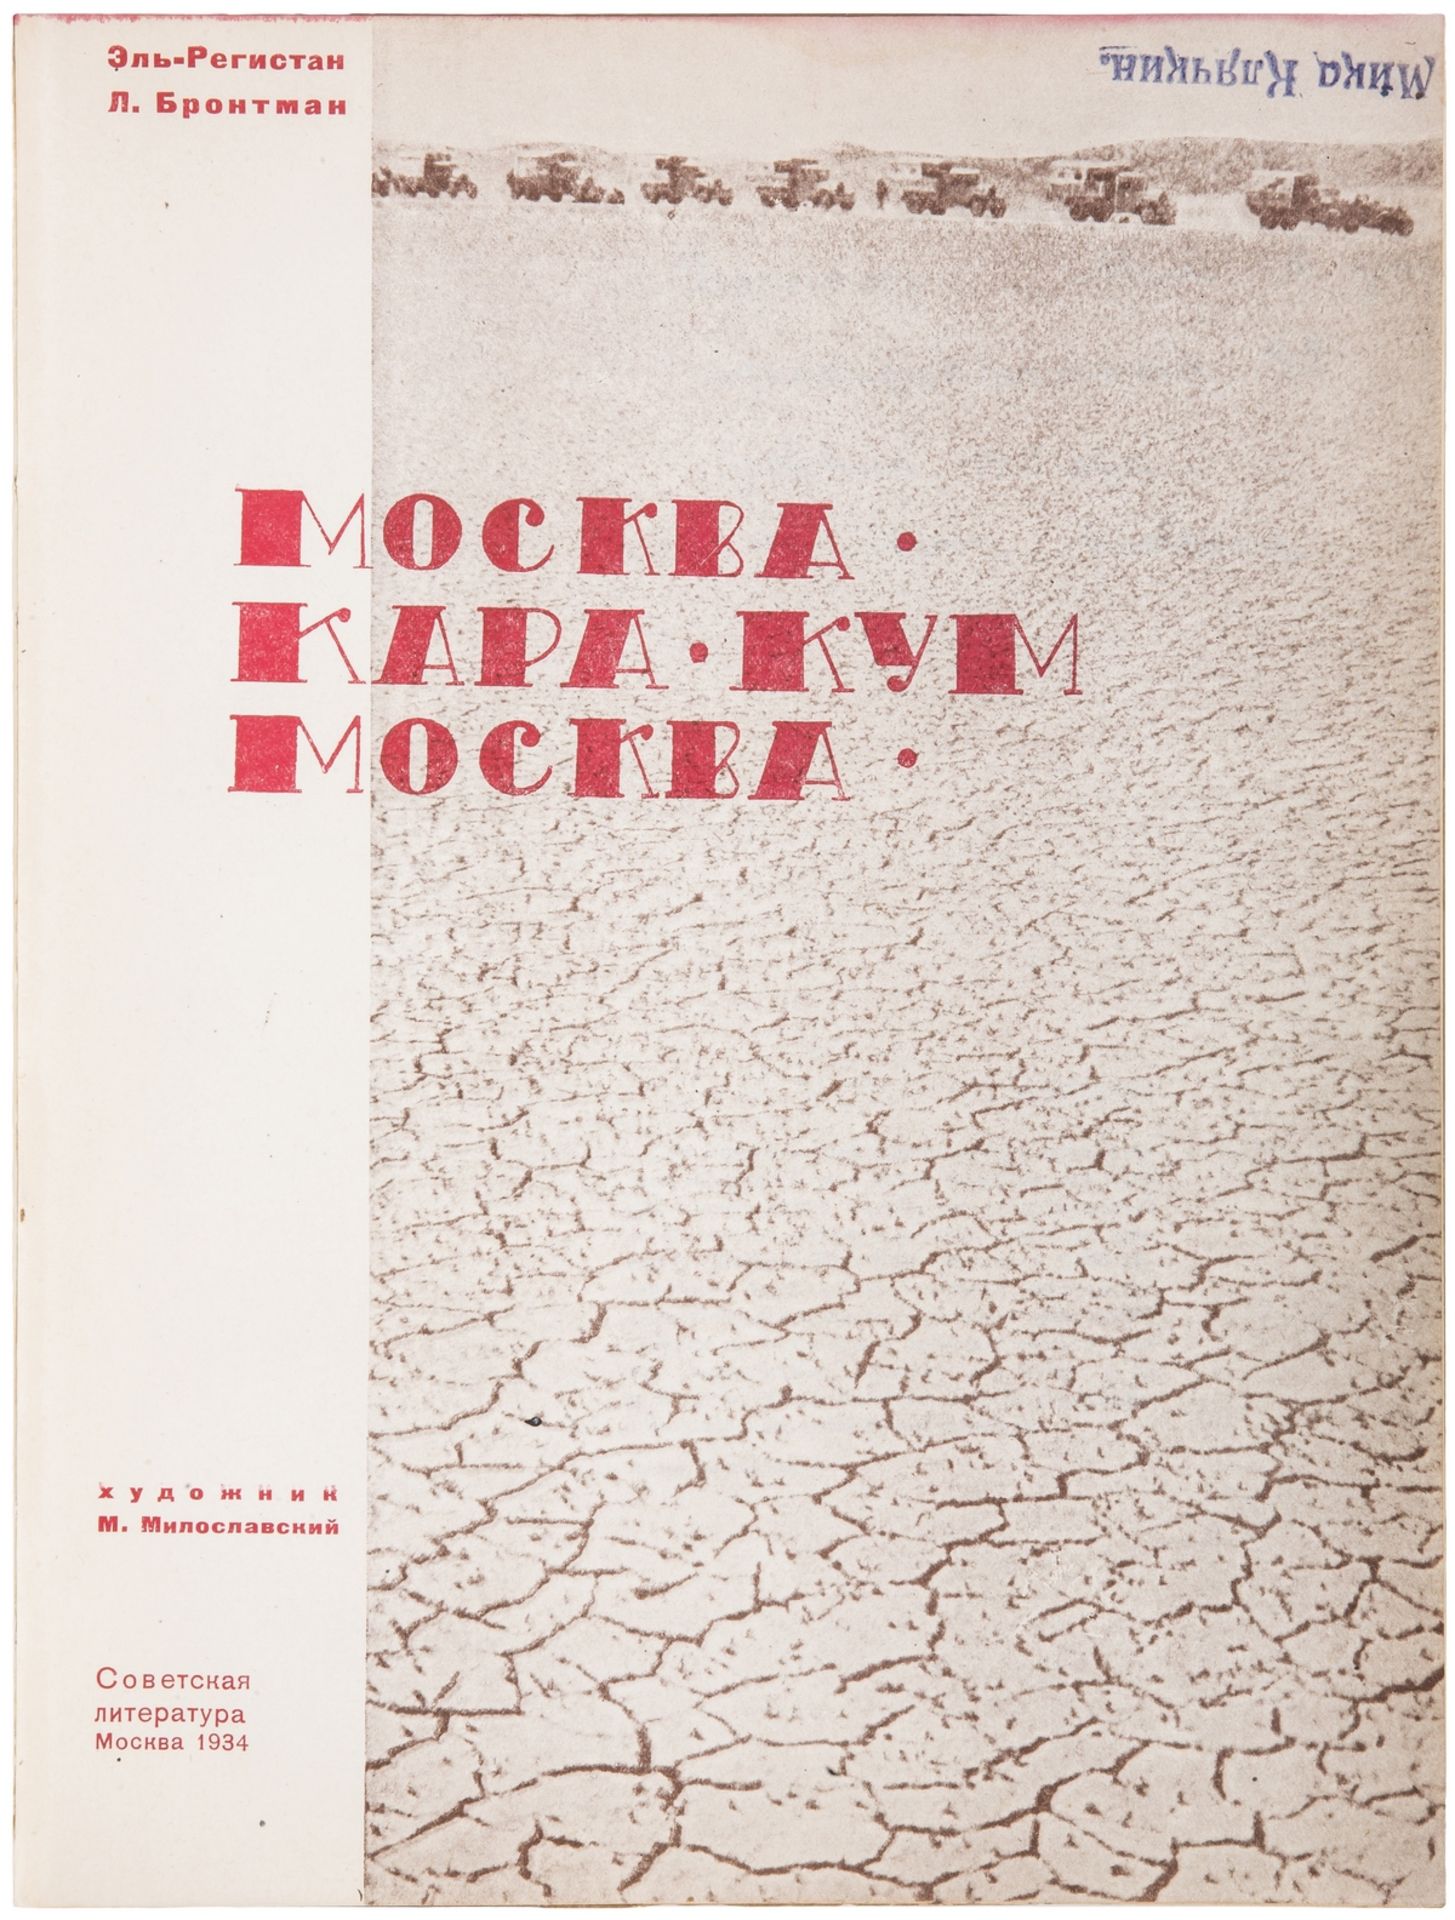 [Miloslavsky, M. design. Soviet]. El-Registan, G.A., Brontman, L.K. Moscow â€“ Karakum â€“ Moscow : - Image 5 of 10